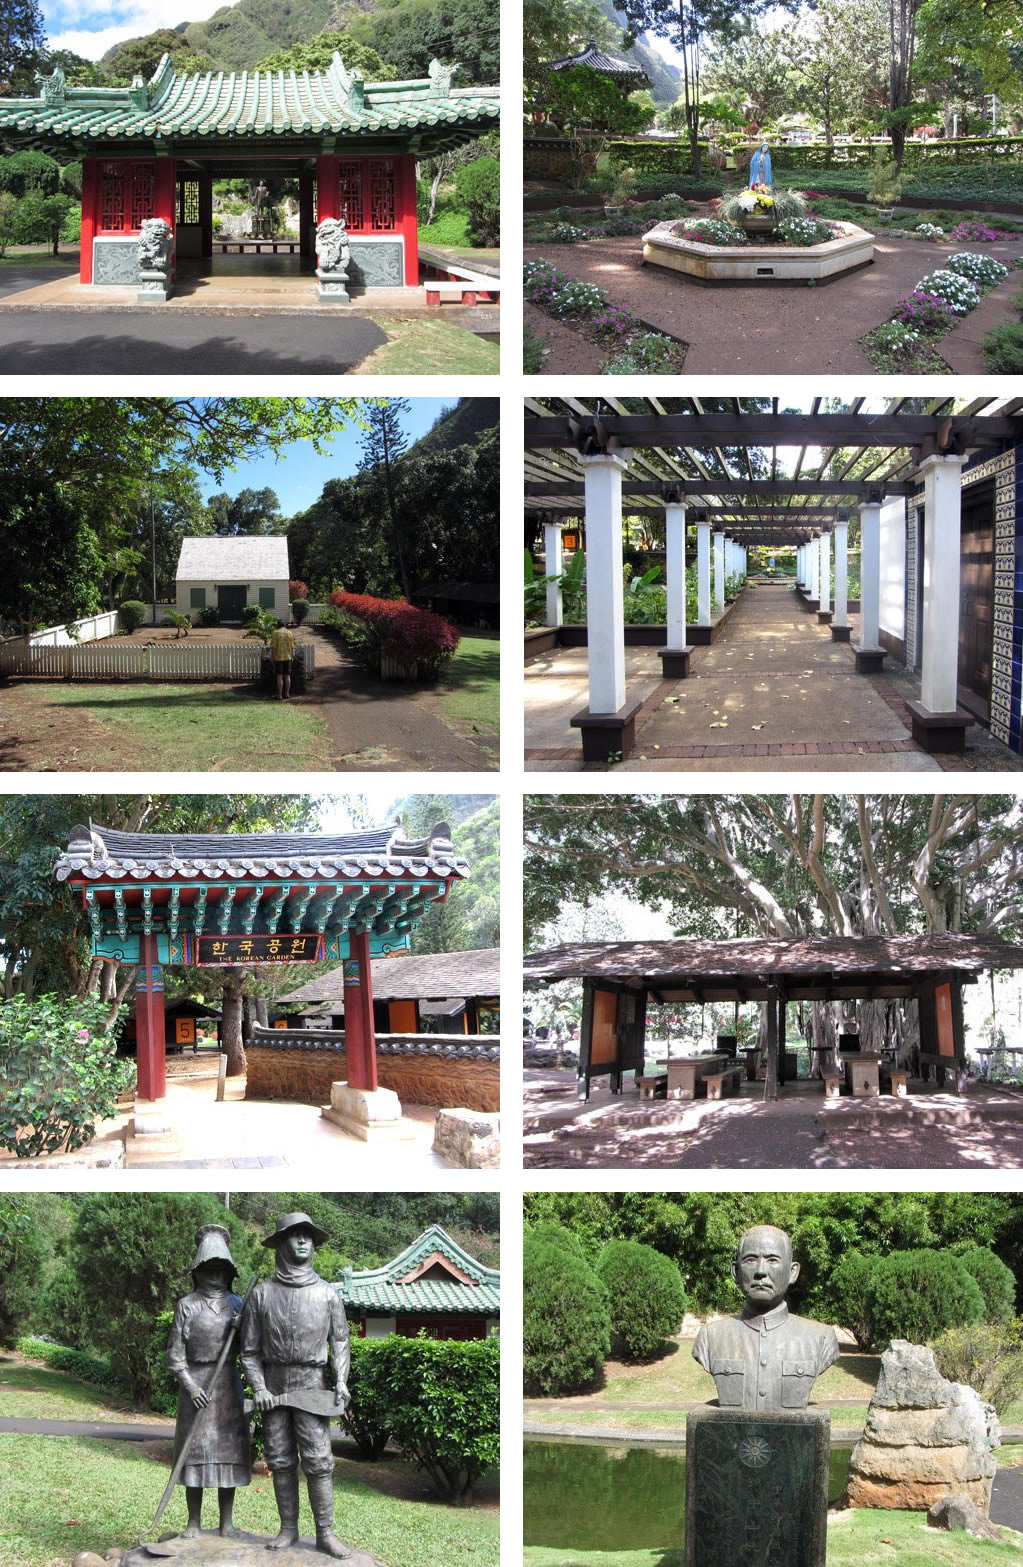 Kepaniwai Heritage Gardens Park